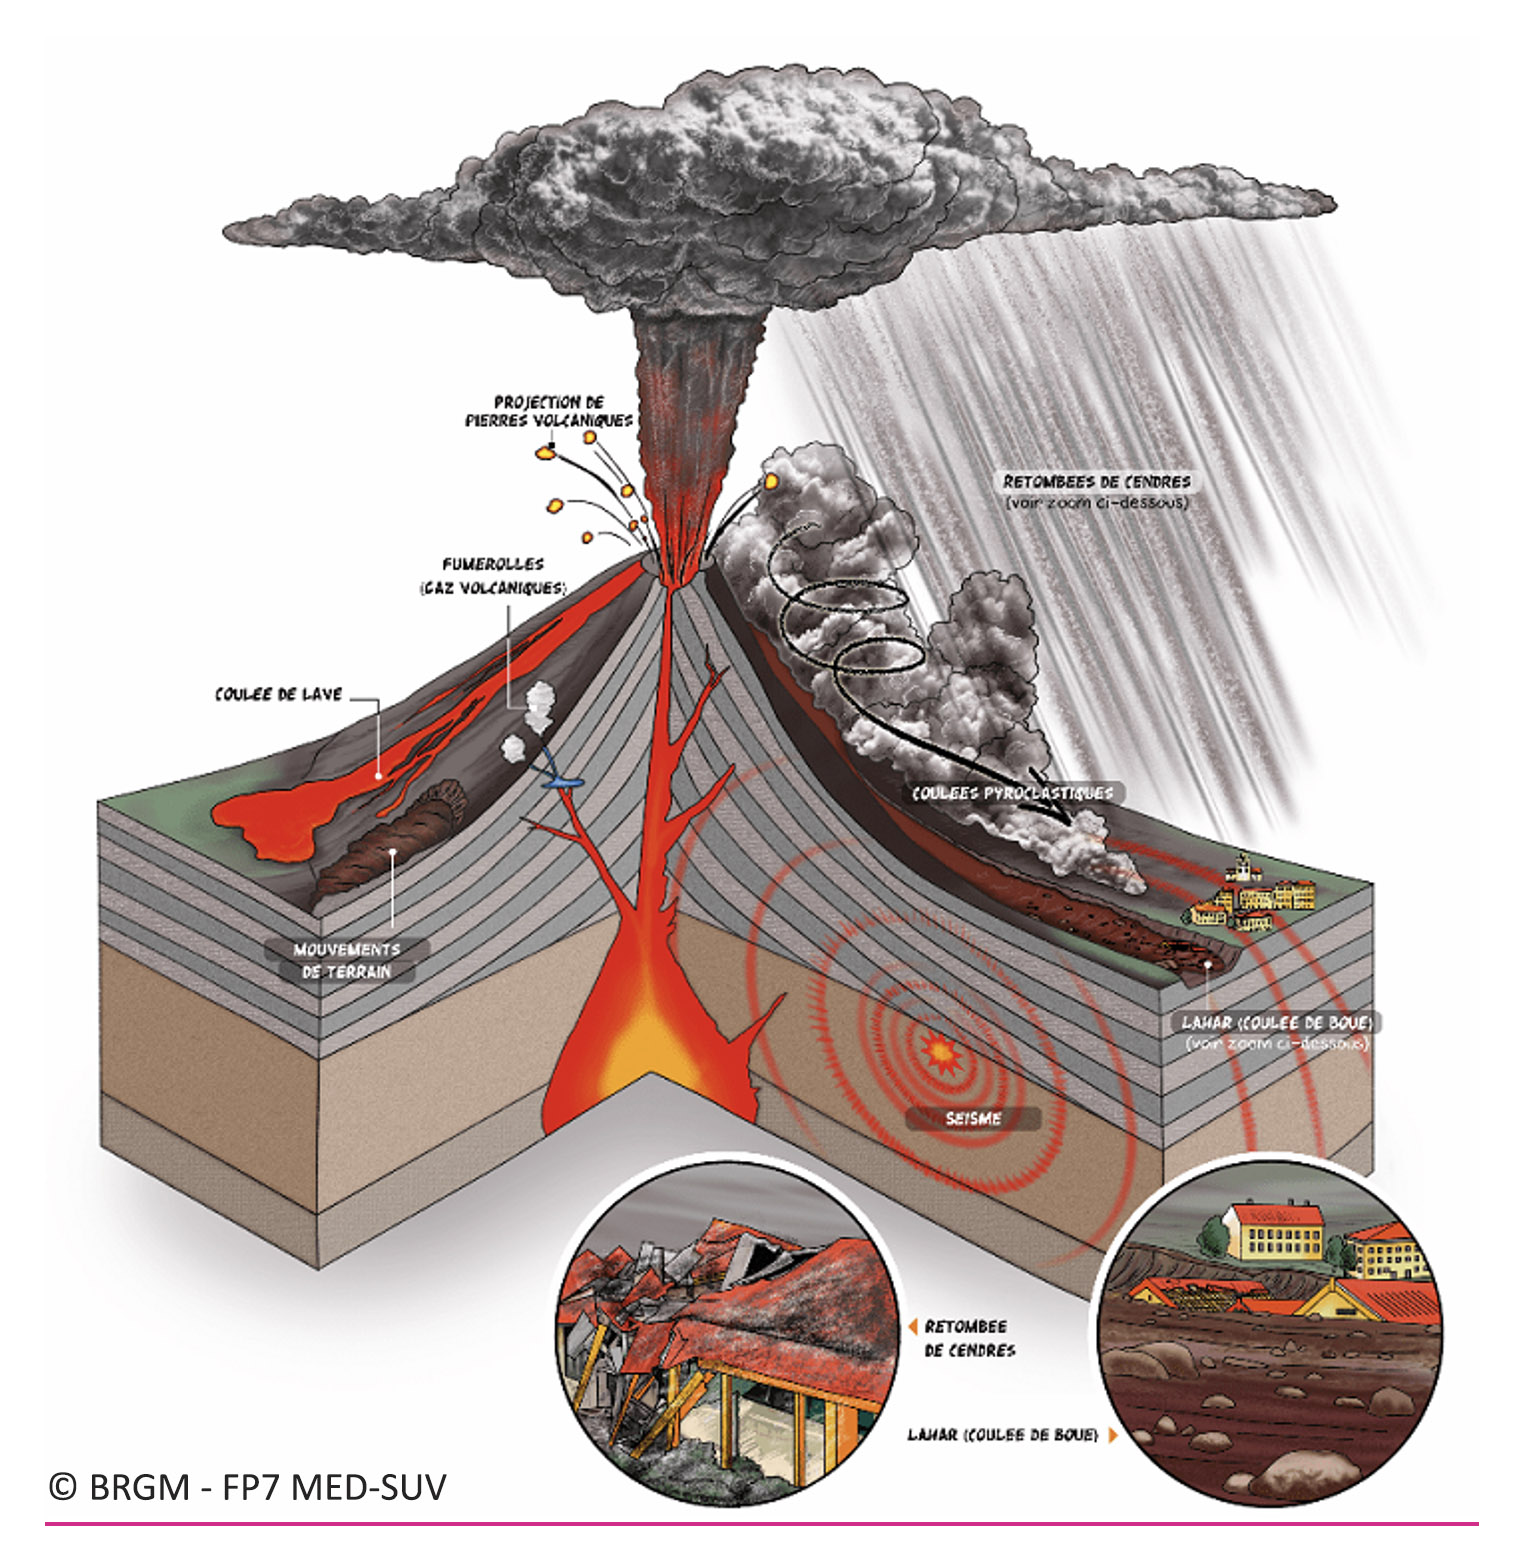 Émissions volcaniques : de nouveaux risques sanitaires identifiés